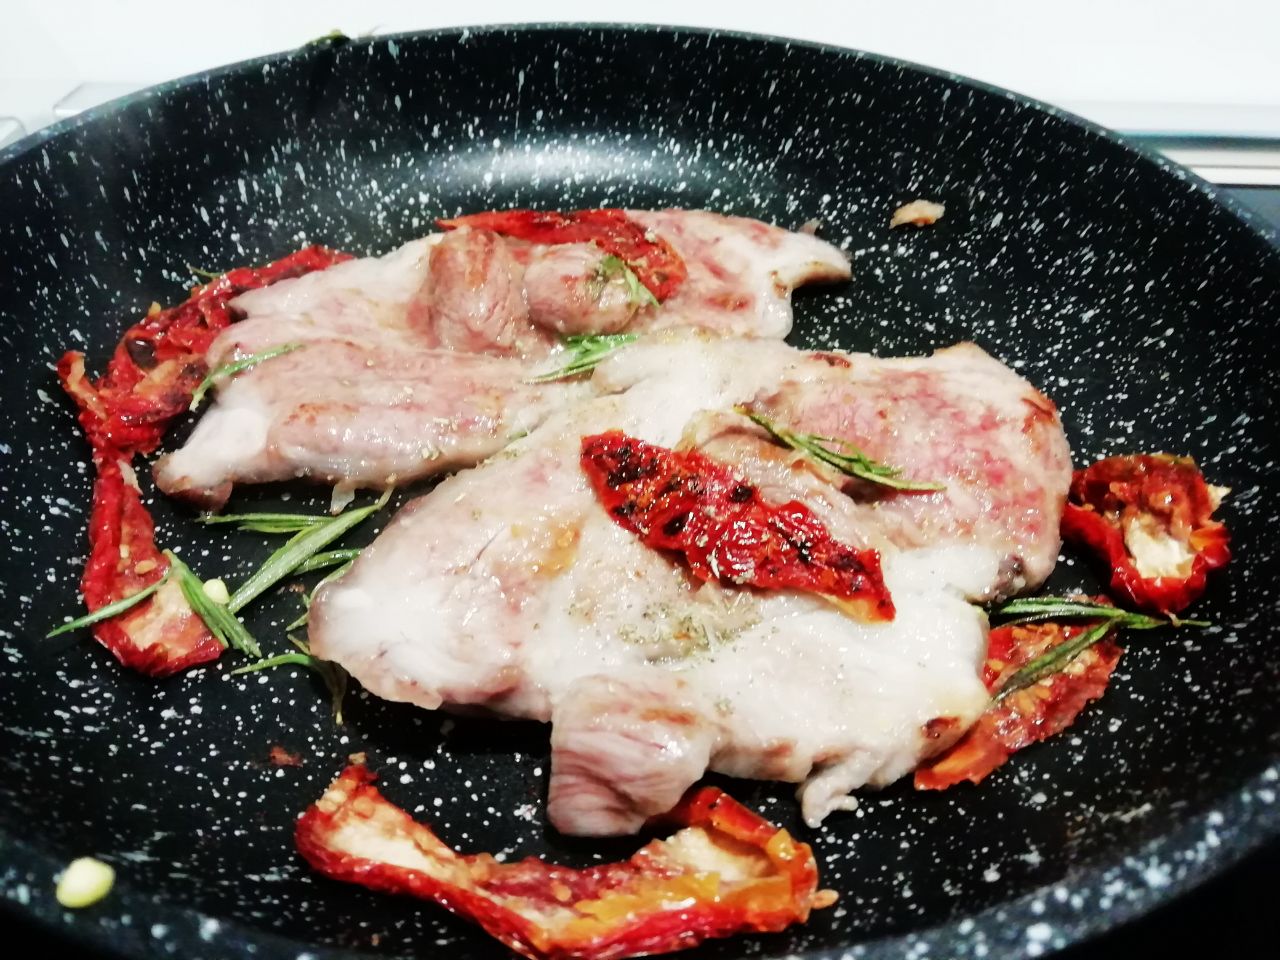 Secondi piatti a base di carne: capoccolo di maiale con pomodori secchi e rosmarino!